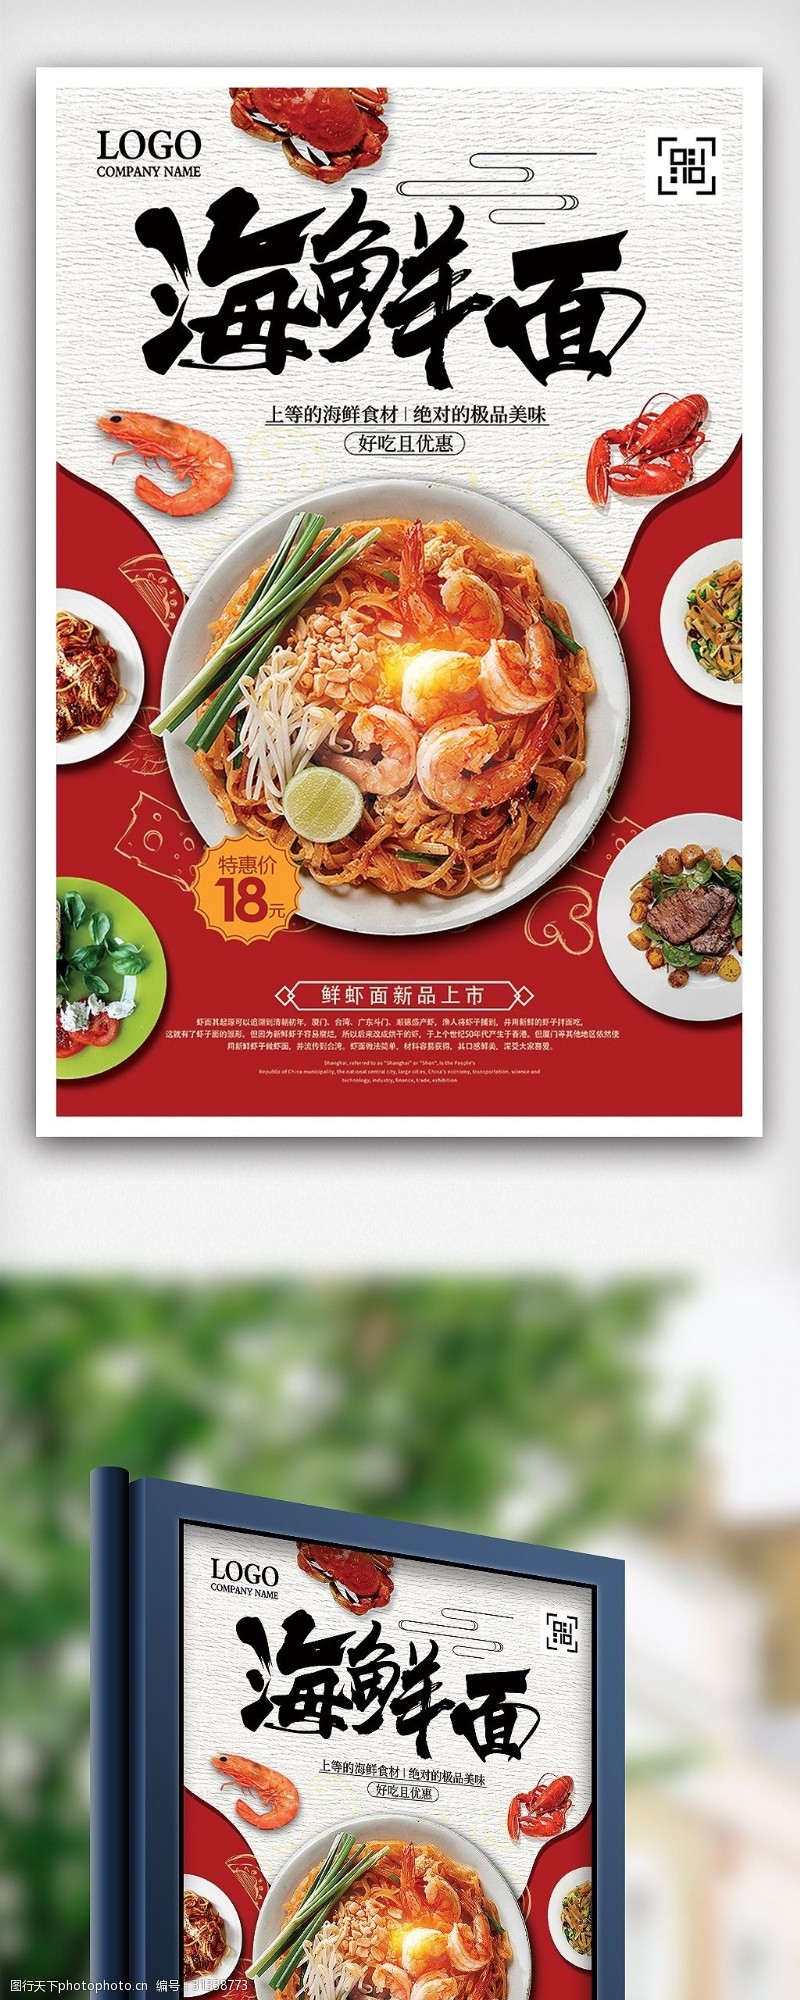 海鲜图片免费下载时尚海鲜面特价餐饮美食海报